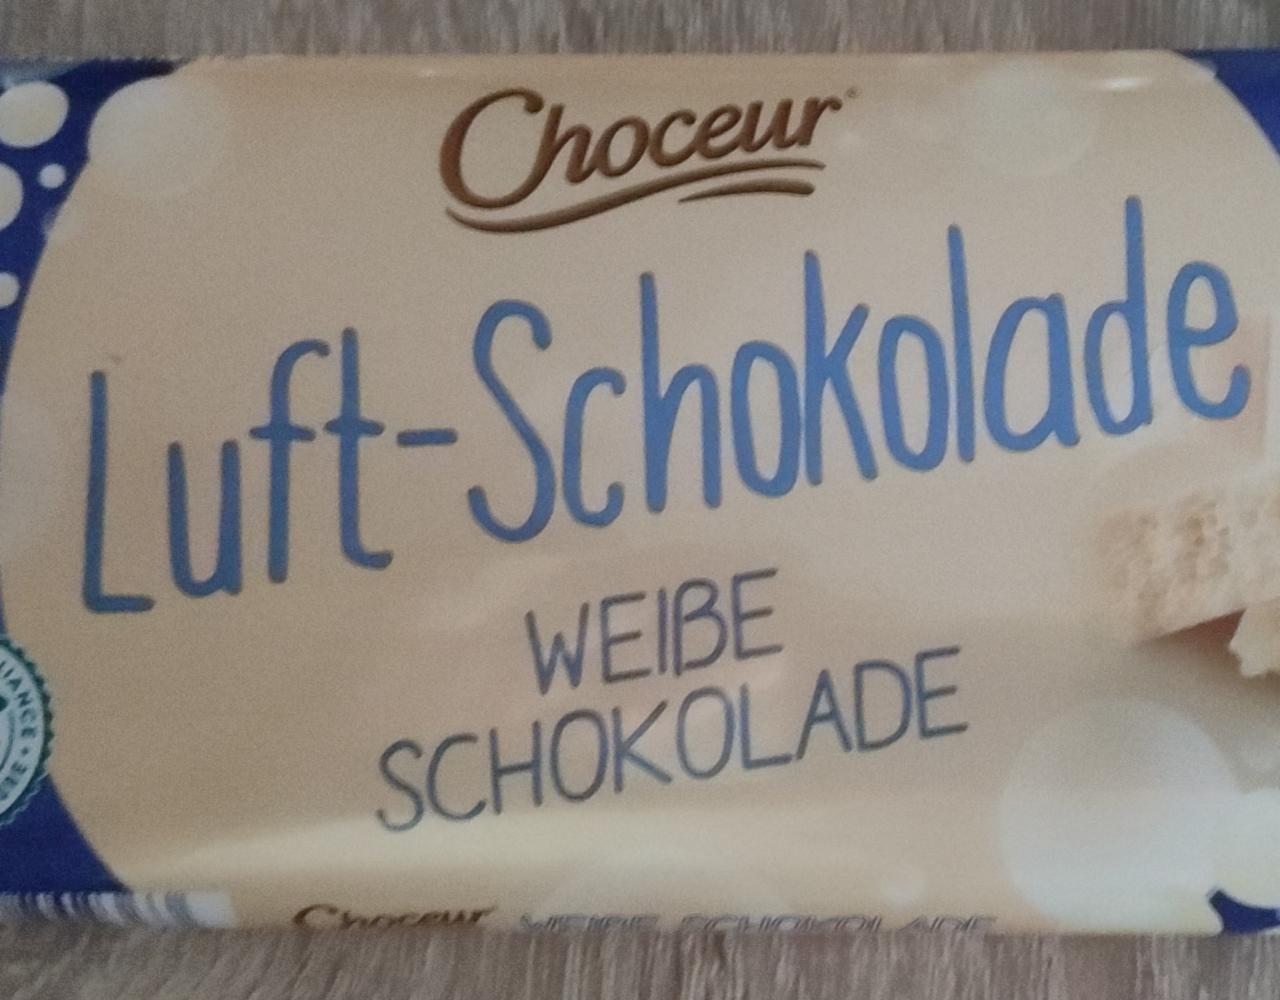 Fotografie - Luft-Schokolade Weiße Schokolade Choceur